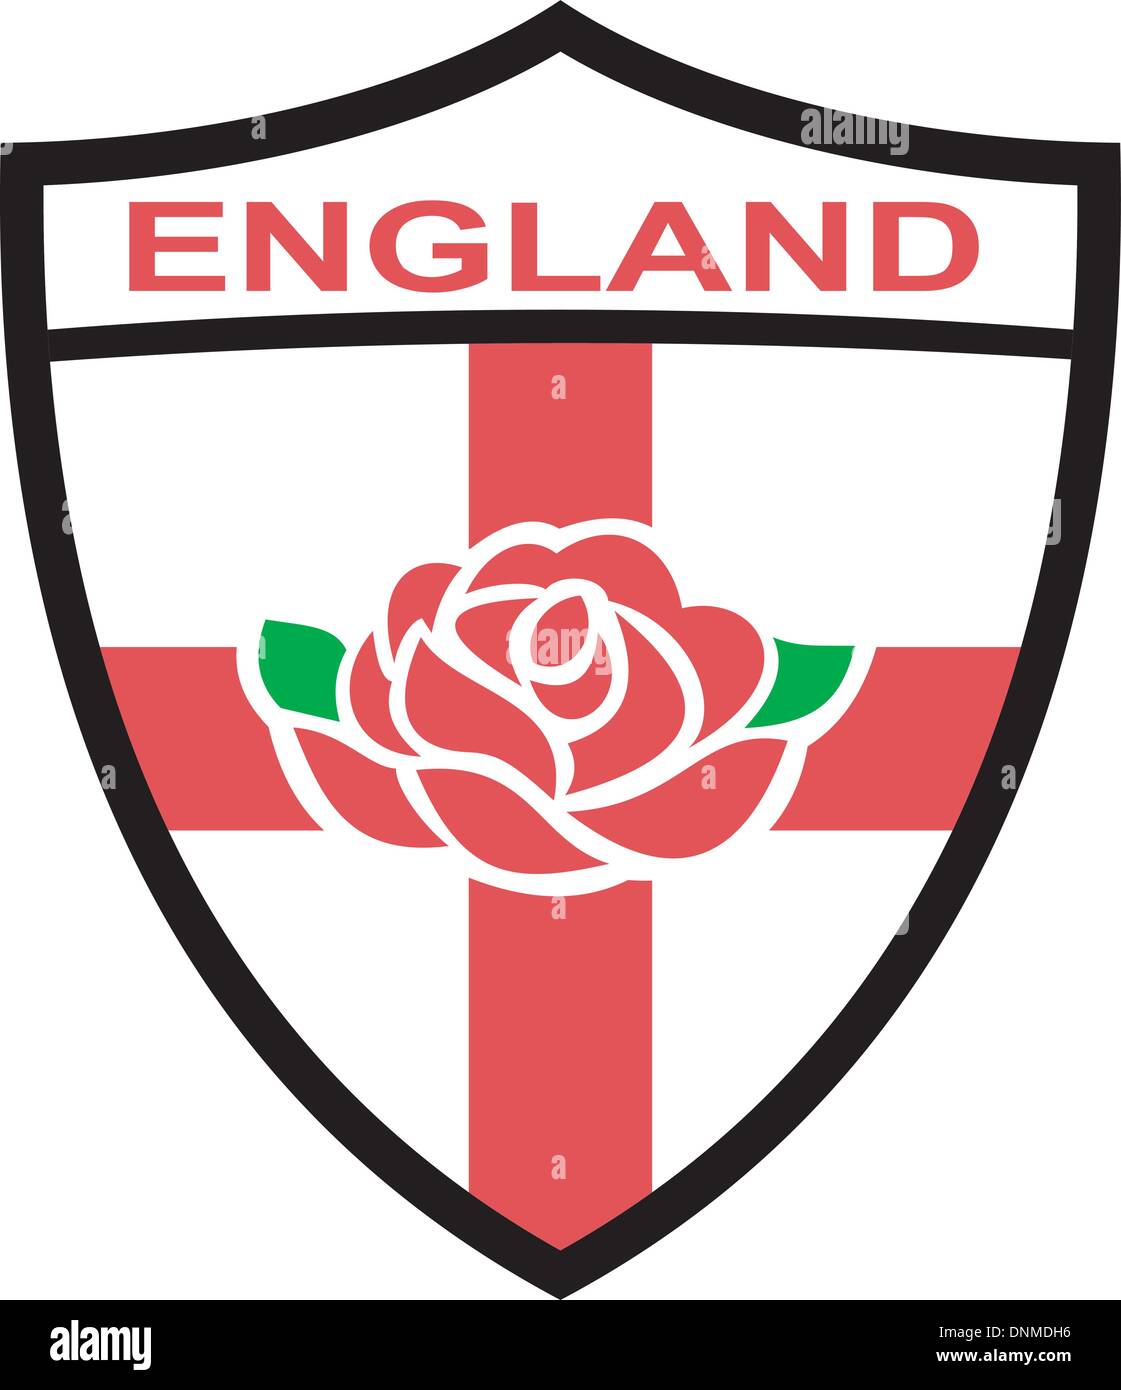 Abbildung von einem roten englischen stieg in Schild mit Flagge von England und Worte "England" Stock Vektor